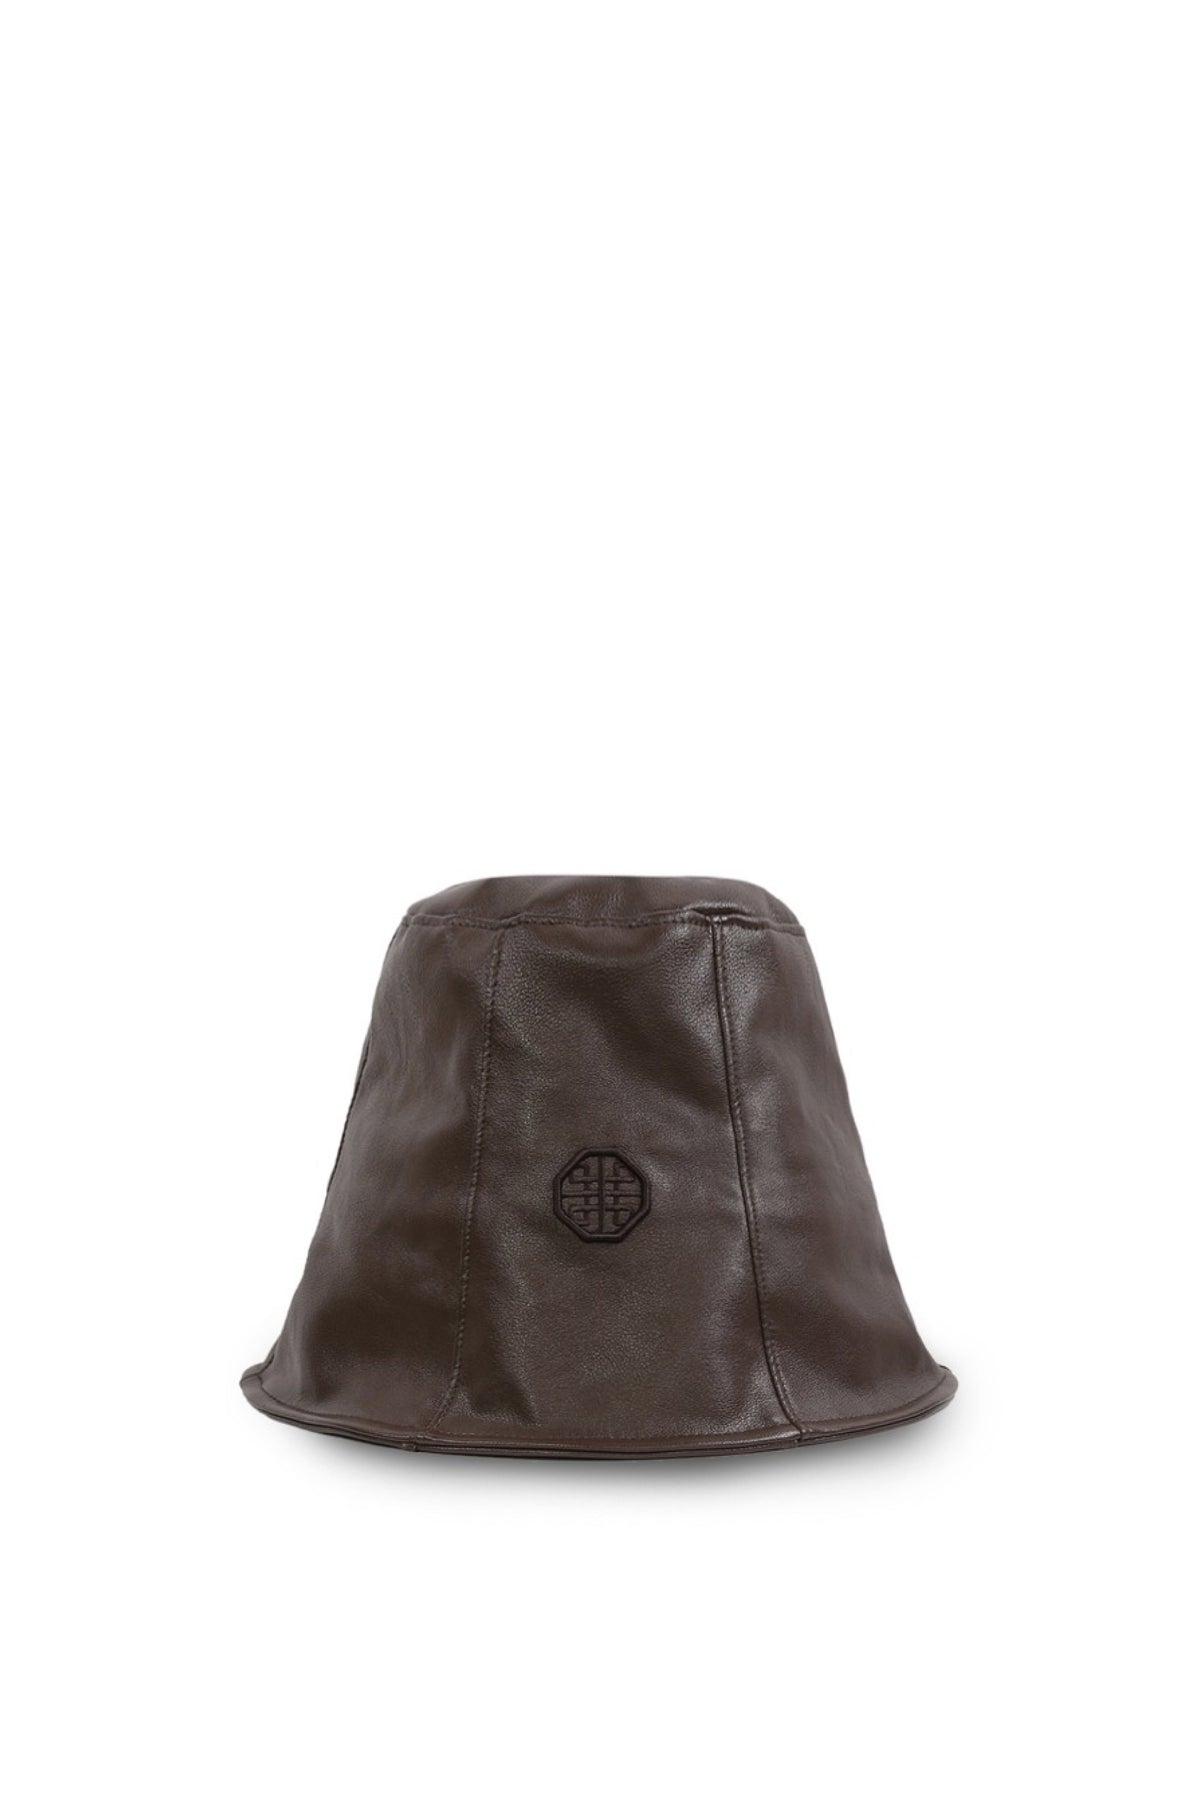 Badblood Leather Bucket Hat Brown